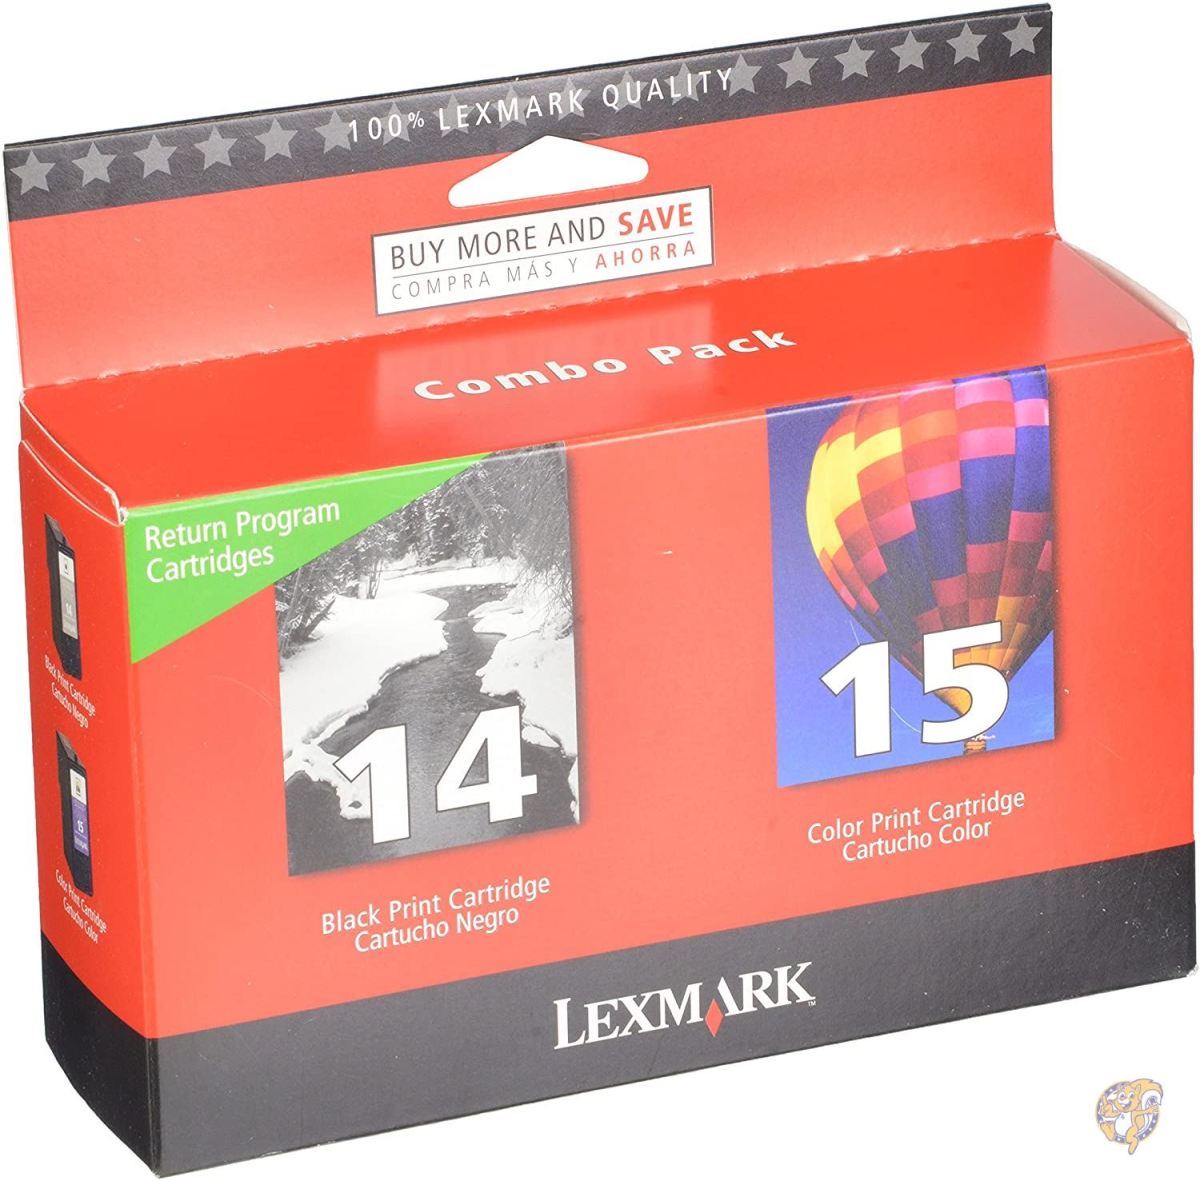 Lexmark #14 & #15 Black and Color Return Program